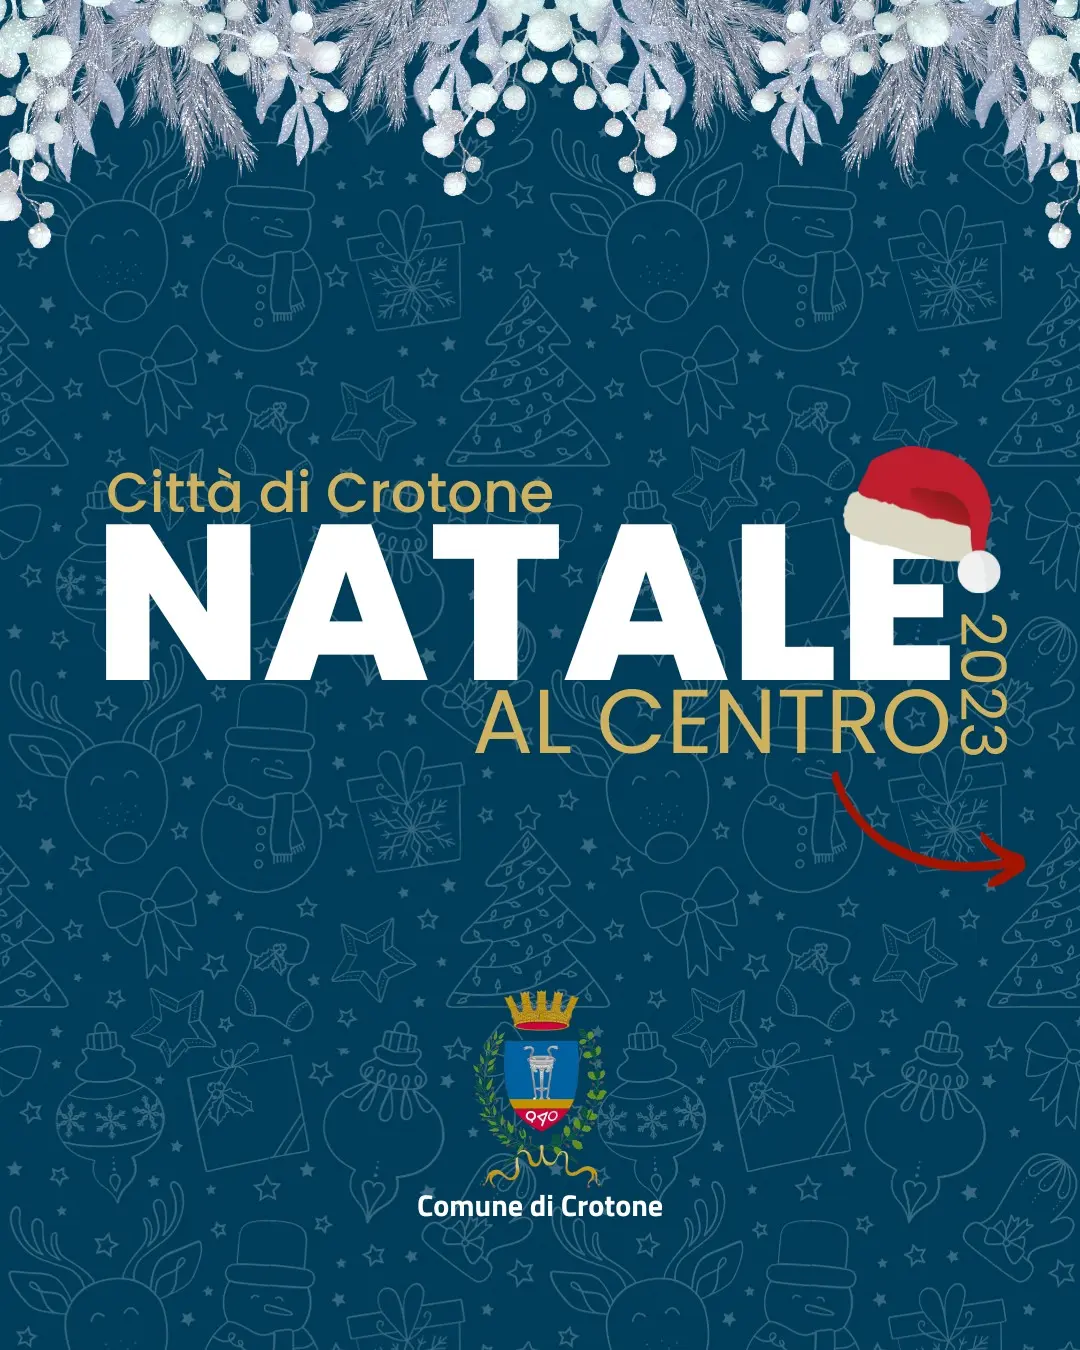 Natale al centro Crotone